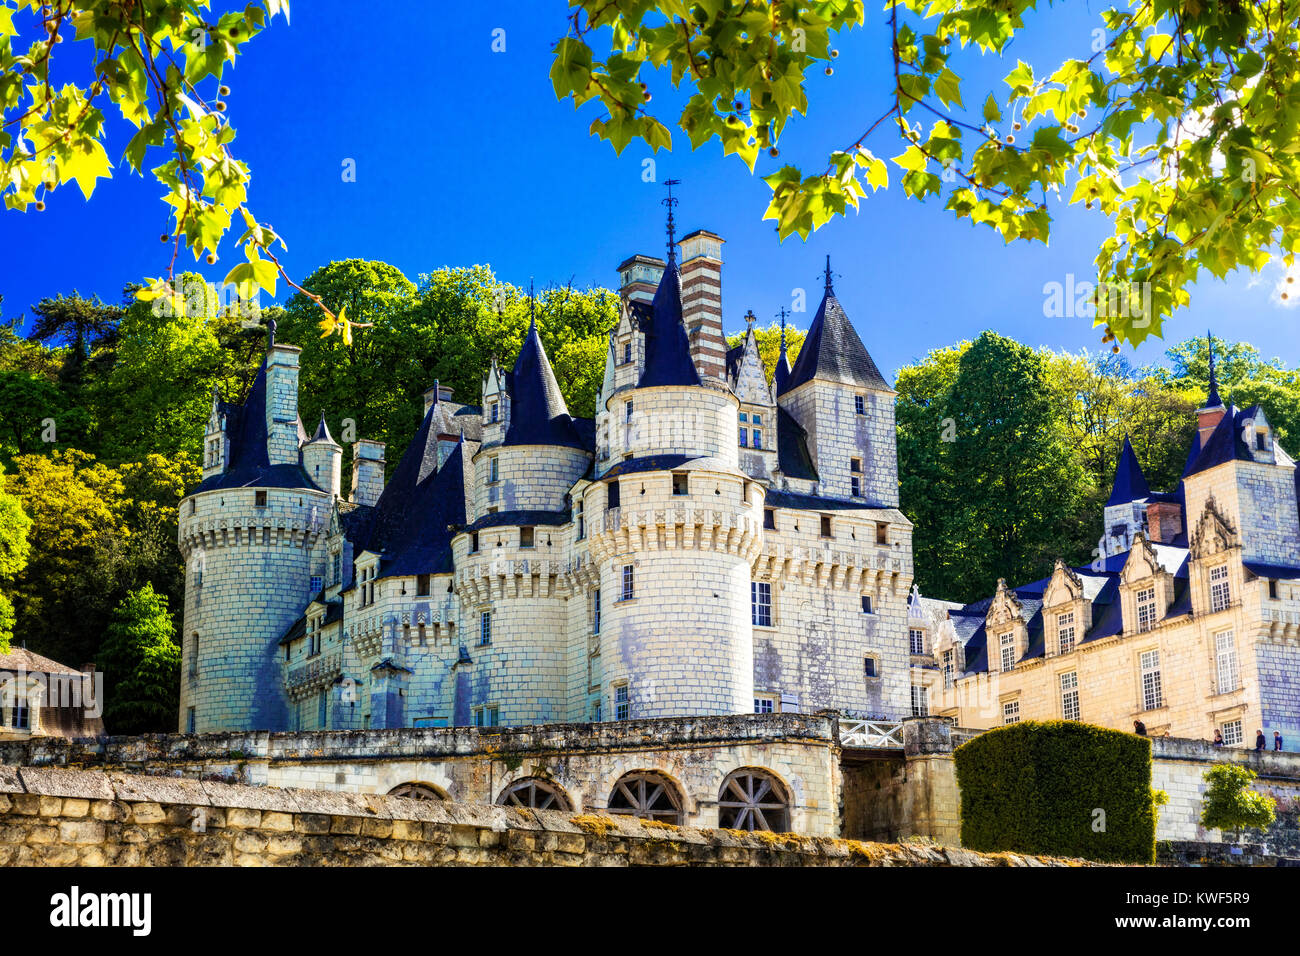 Usse magnífico castillo medieval,vista panorámica, el valle del Loira, Francia. Foto de stock